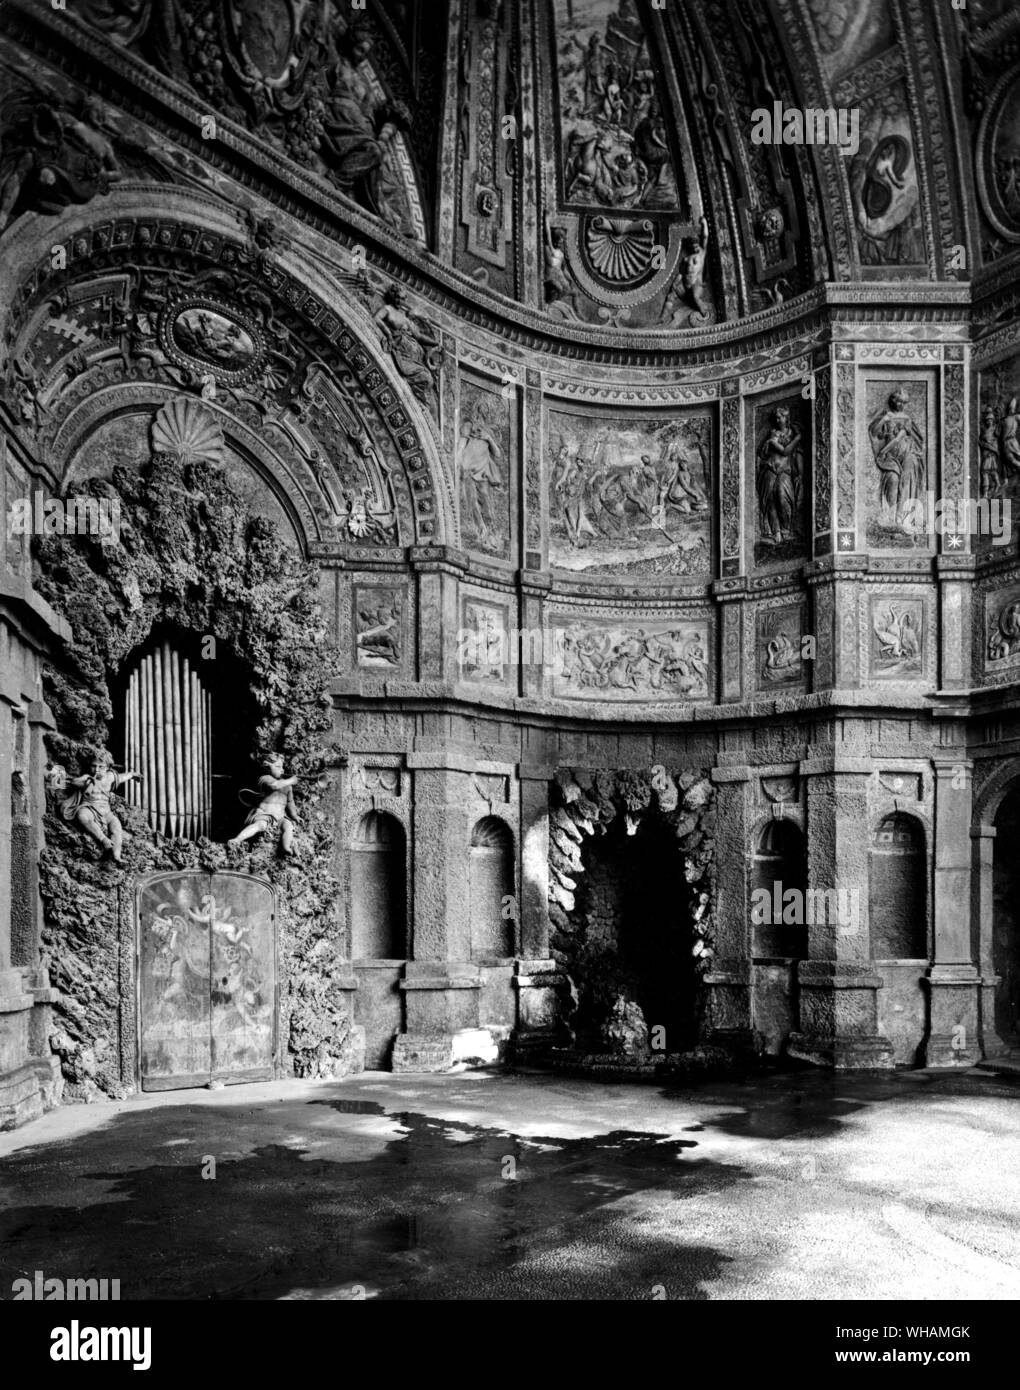 L'organe de l'eau Clément VIII dans le palais du Quirinal. Le noir au centre archway mène à la Forge de Vulcain, une grotte dans laquelle la vie des automates de taille moyenne étaient auparavant travaillé par la puissance de l'eau. L'orgue a été silencieux pendant de nombreuses années Banque D'Images